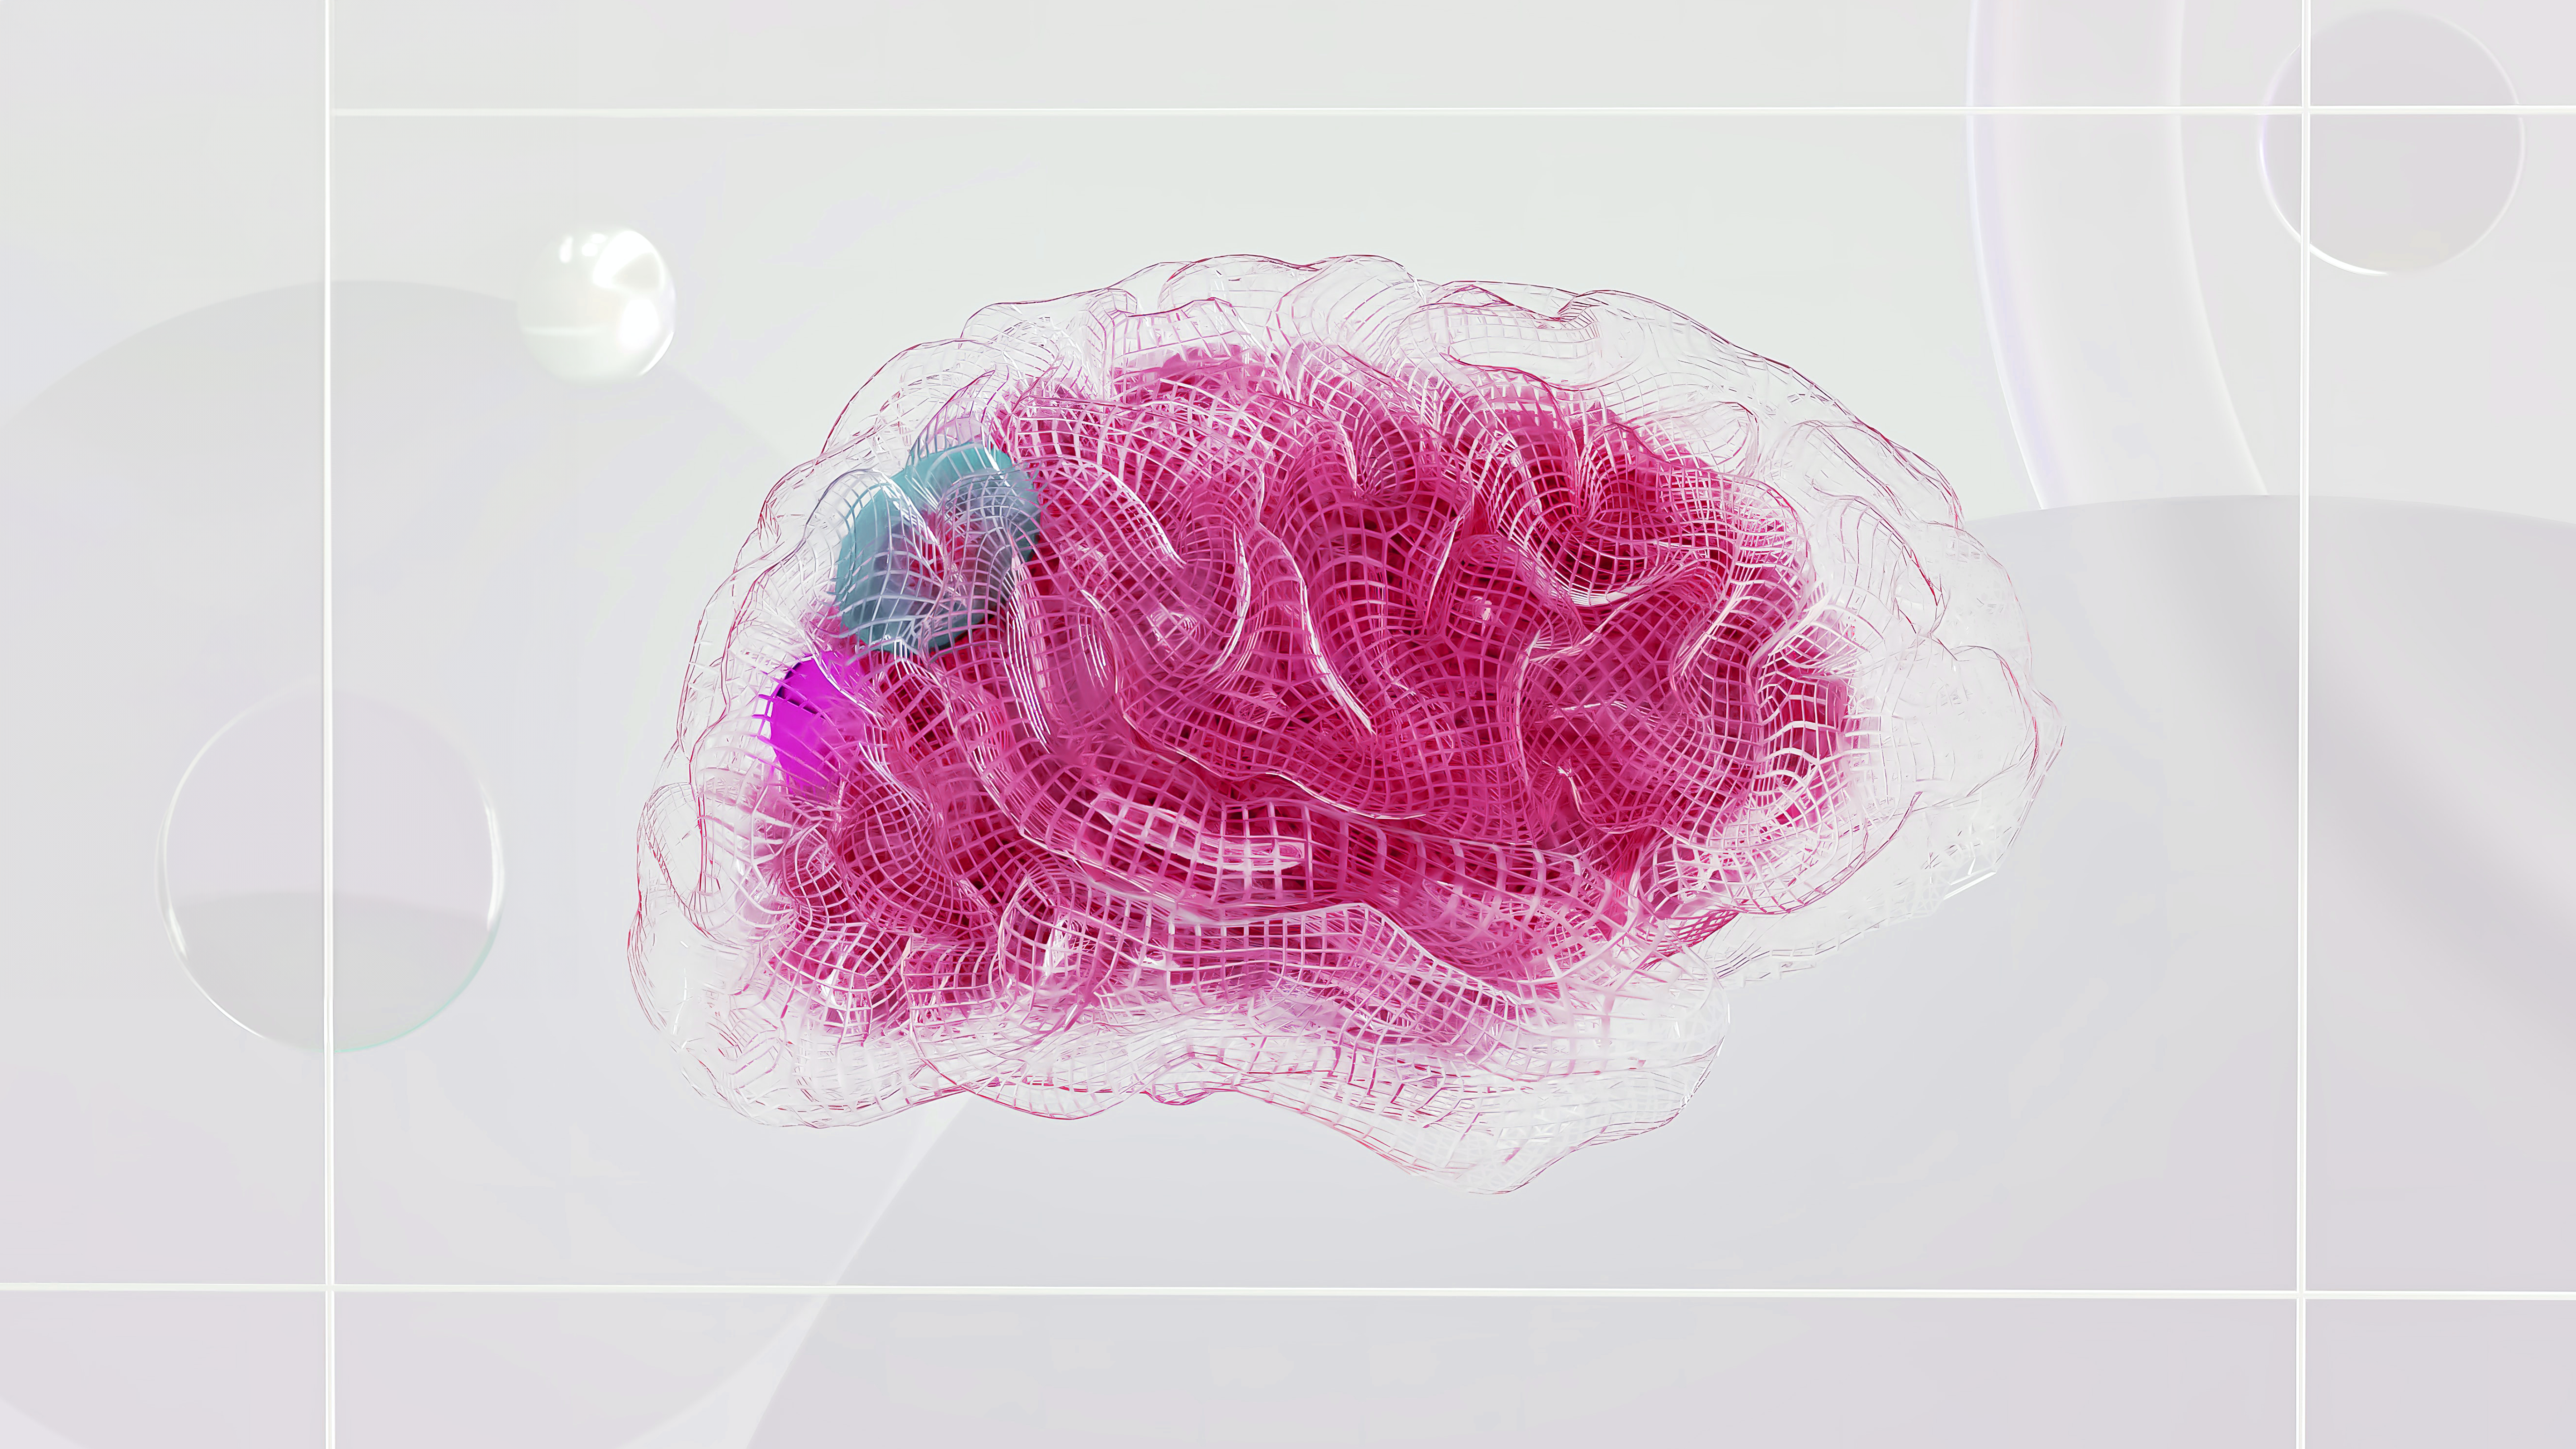 Netzgewebeartiges Material bildet die Form eines Gehirns